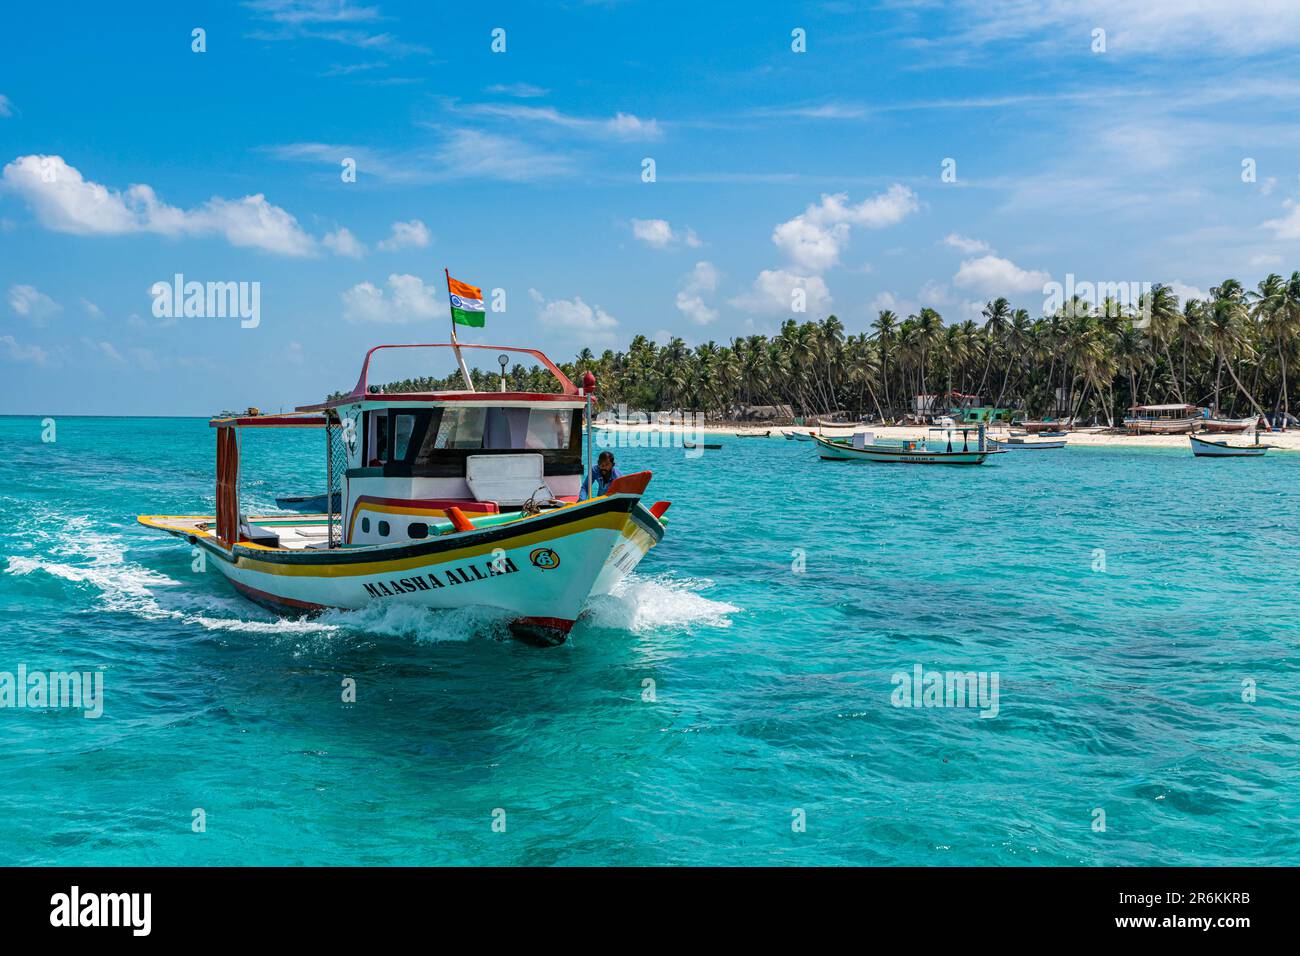 Petits bateaux devant une plage de sable blanc bordée de palmiers, île d'Agatti, archipel de Lakshadweep, territoire de l'Union de l'Inde, Océan Indien, Asie Banque D'Images